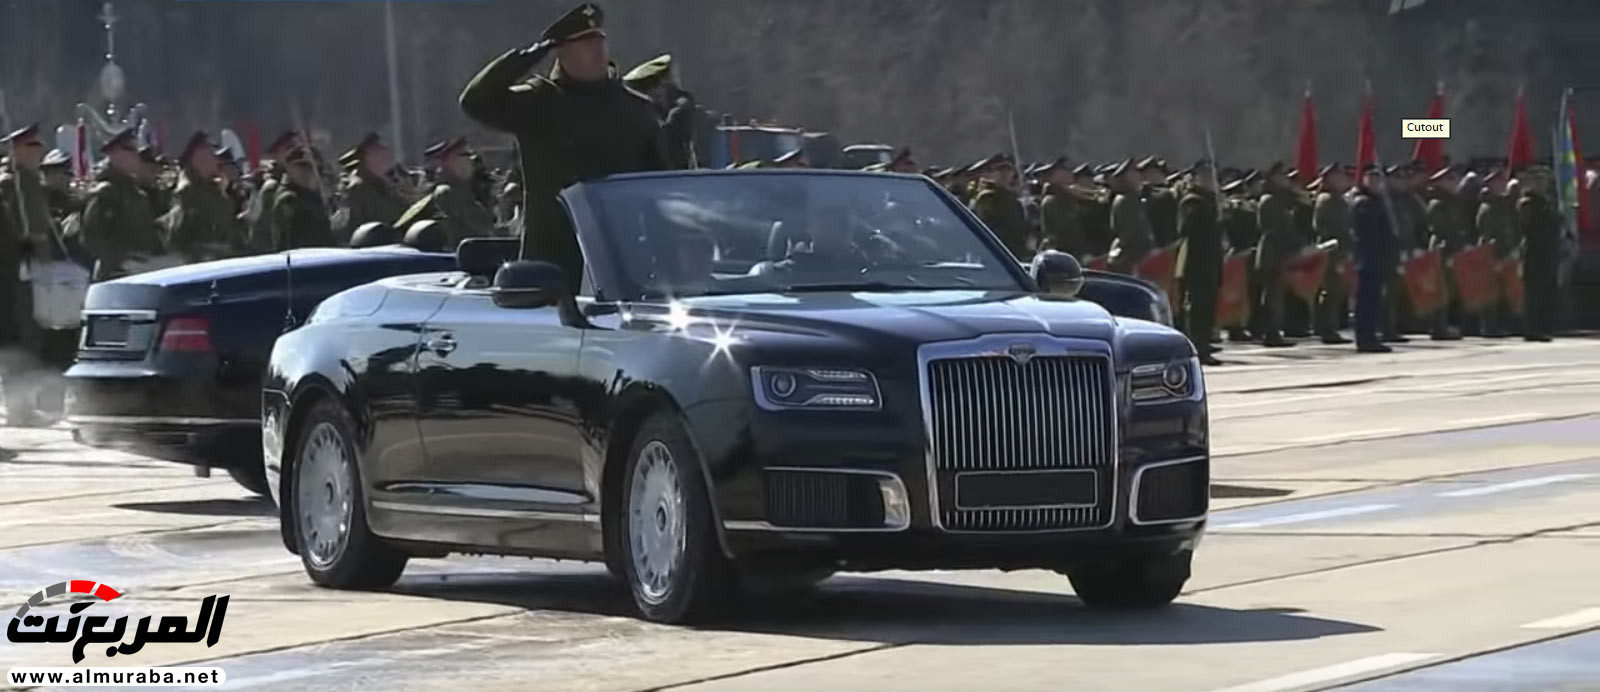 "بالفيديو" سيارة اوروس كشف الروسية تعتقد أنها منافسة رولزرويس داون 24